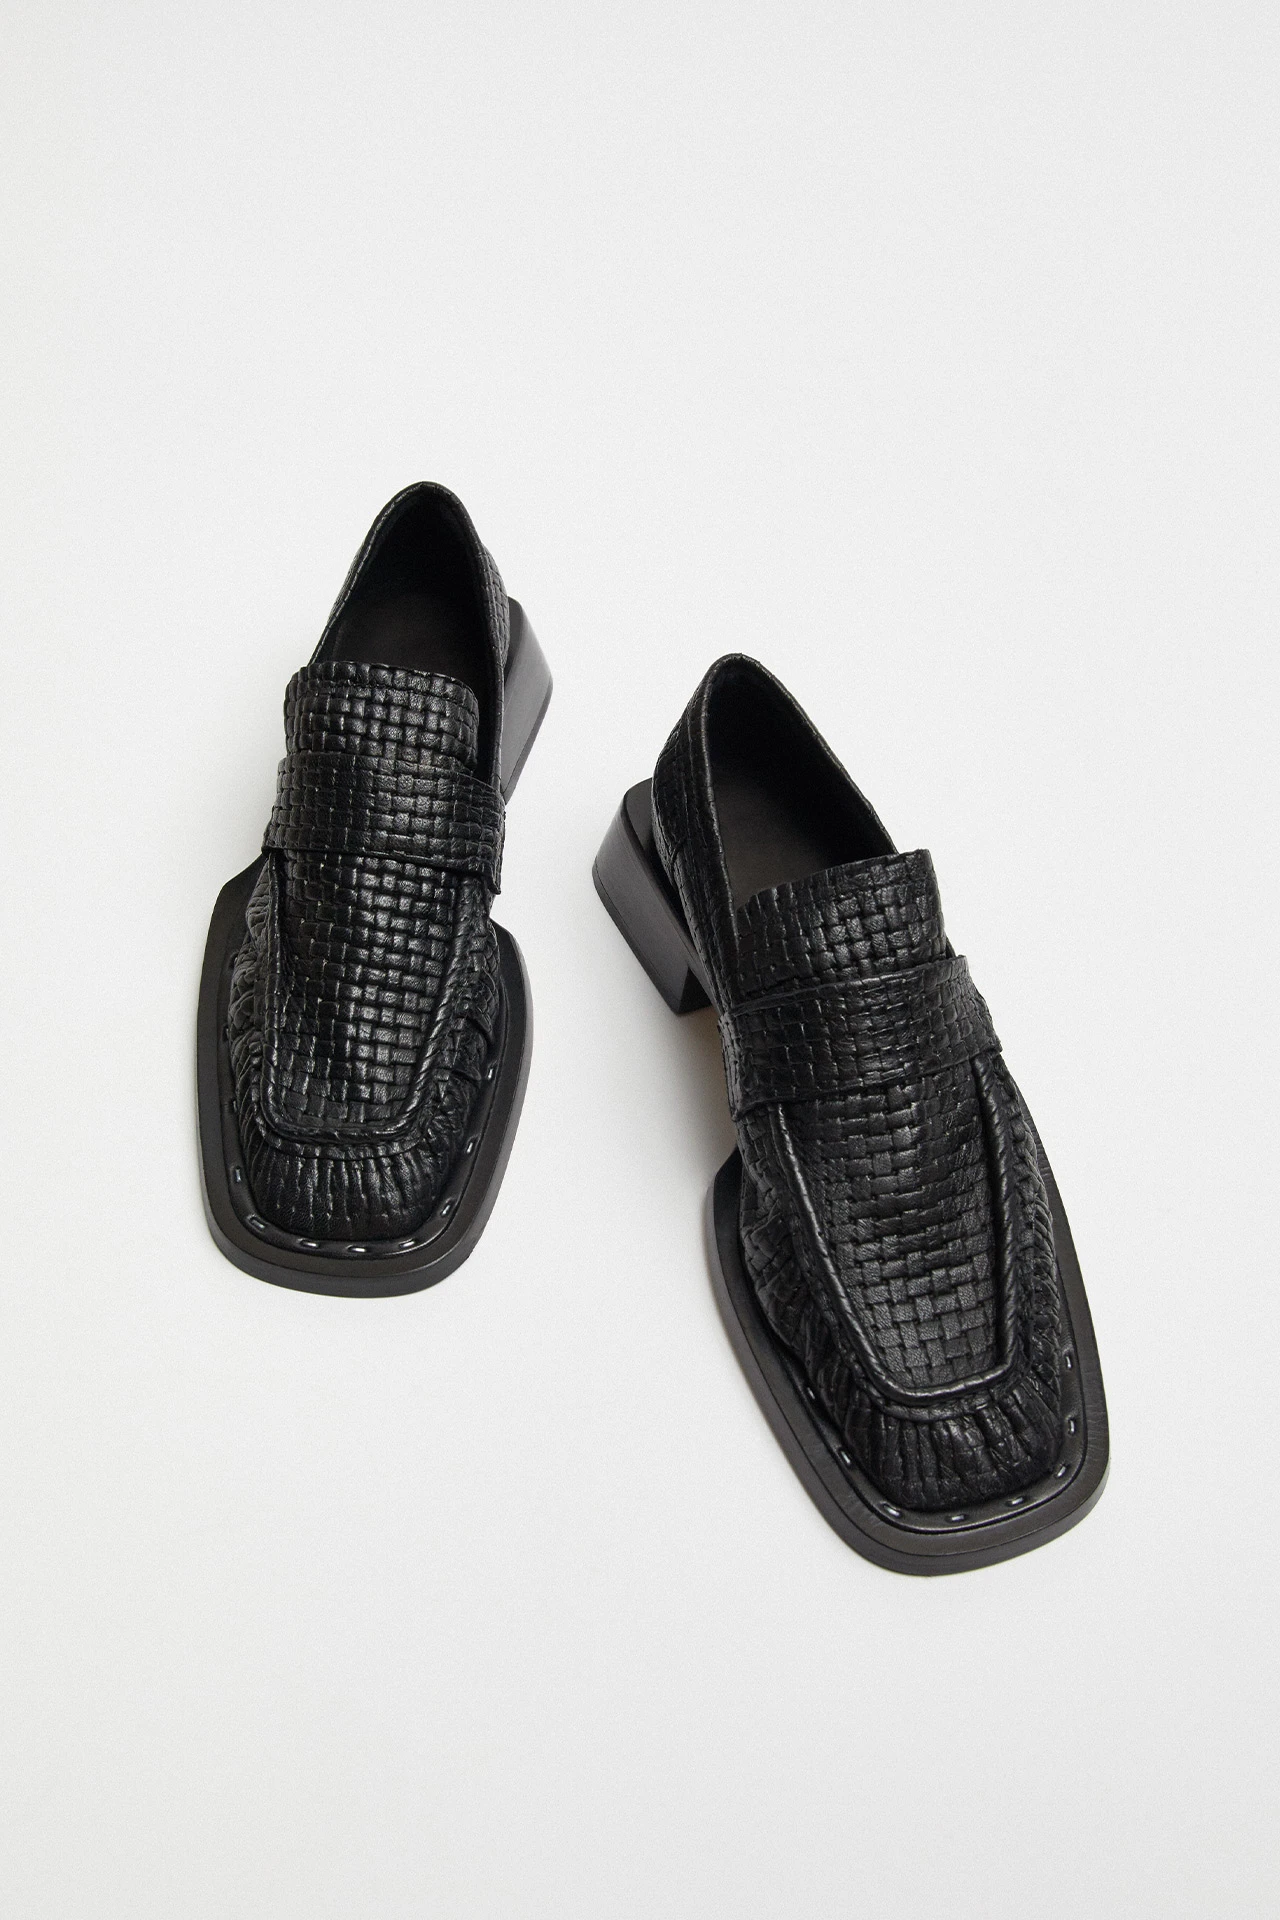 Miista-Airi-Black-Leather-Loafers-02